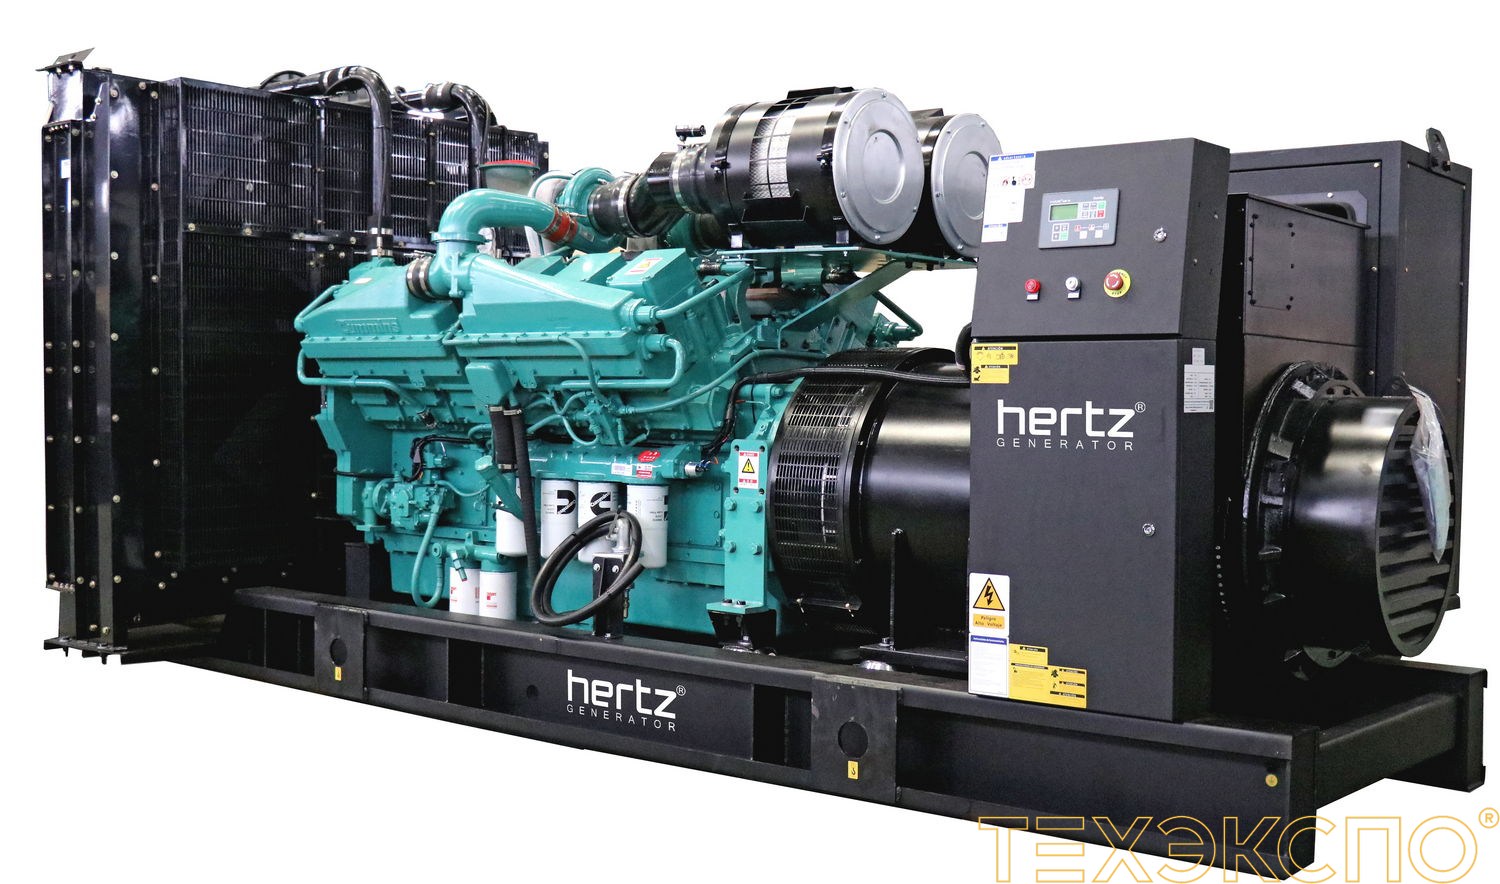 HERTZ HG1250 CL - ДЭС 900 кВт в Санкт-Петербурге | Дизельная электростанция в Техэкспо